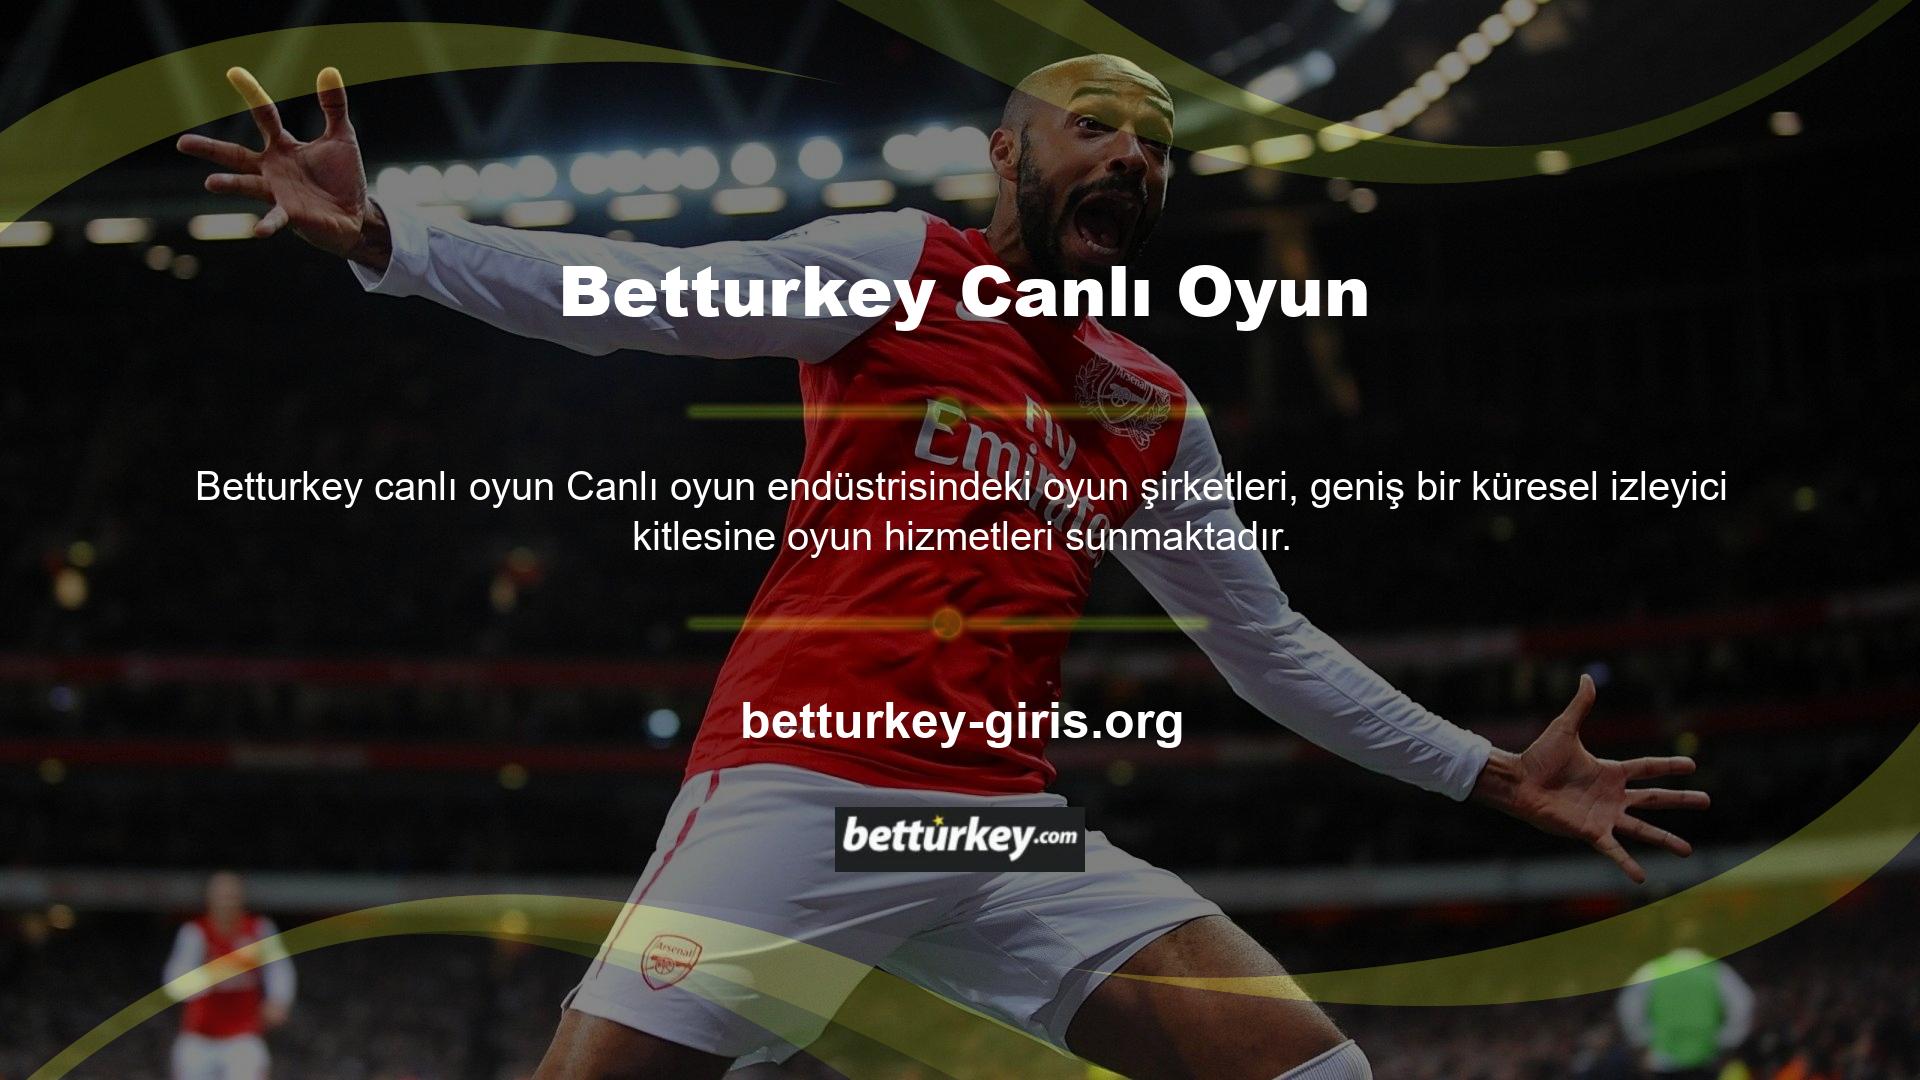 Bu bağlamda Türk oyun tutkunları yabancı oyun sitelerine her zaman büyük ilgi göstermiştir